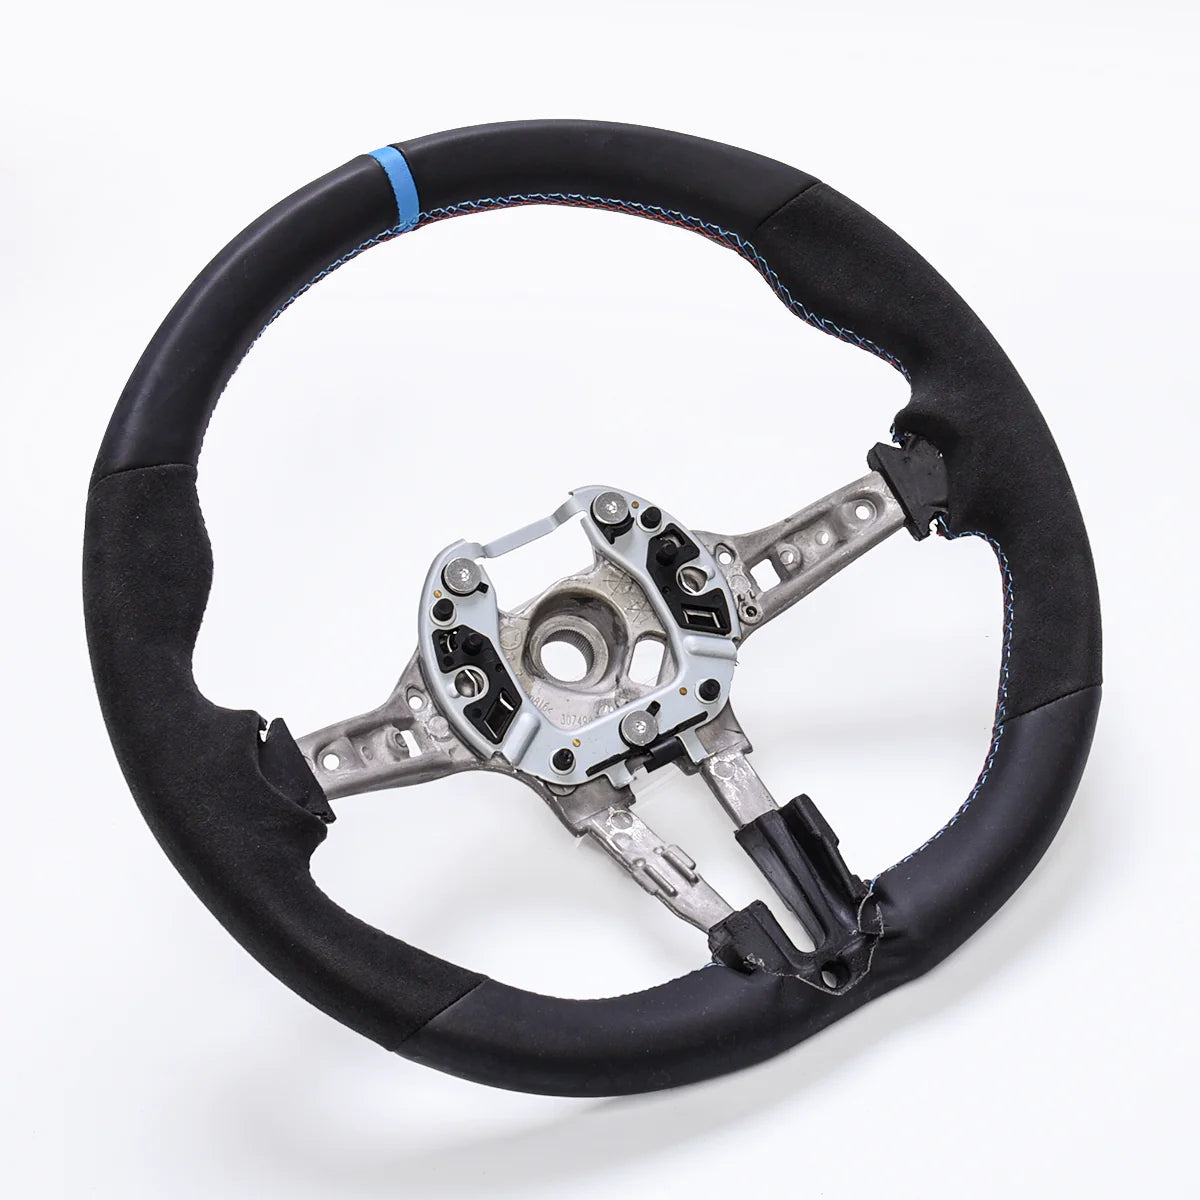 Alcantara Steering Wheel for BMW E82 E90 E92